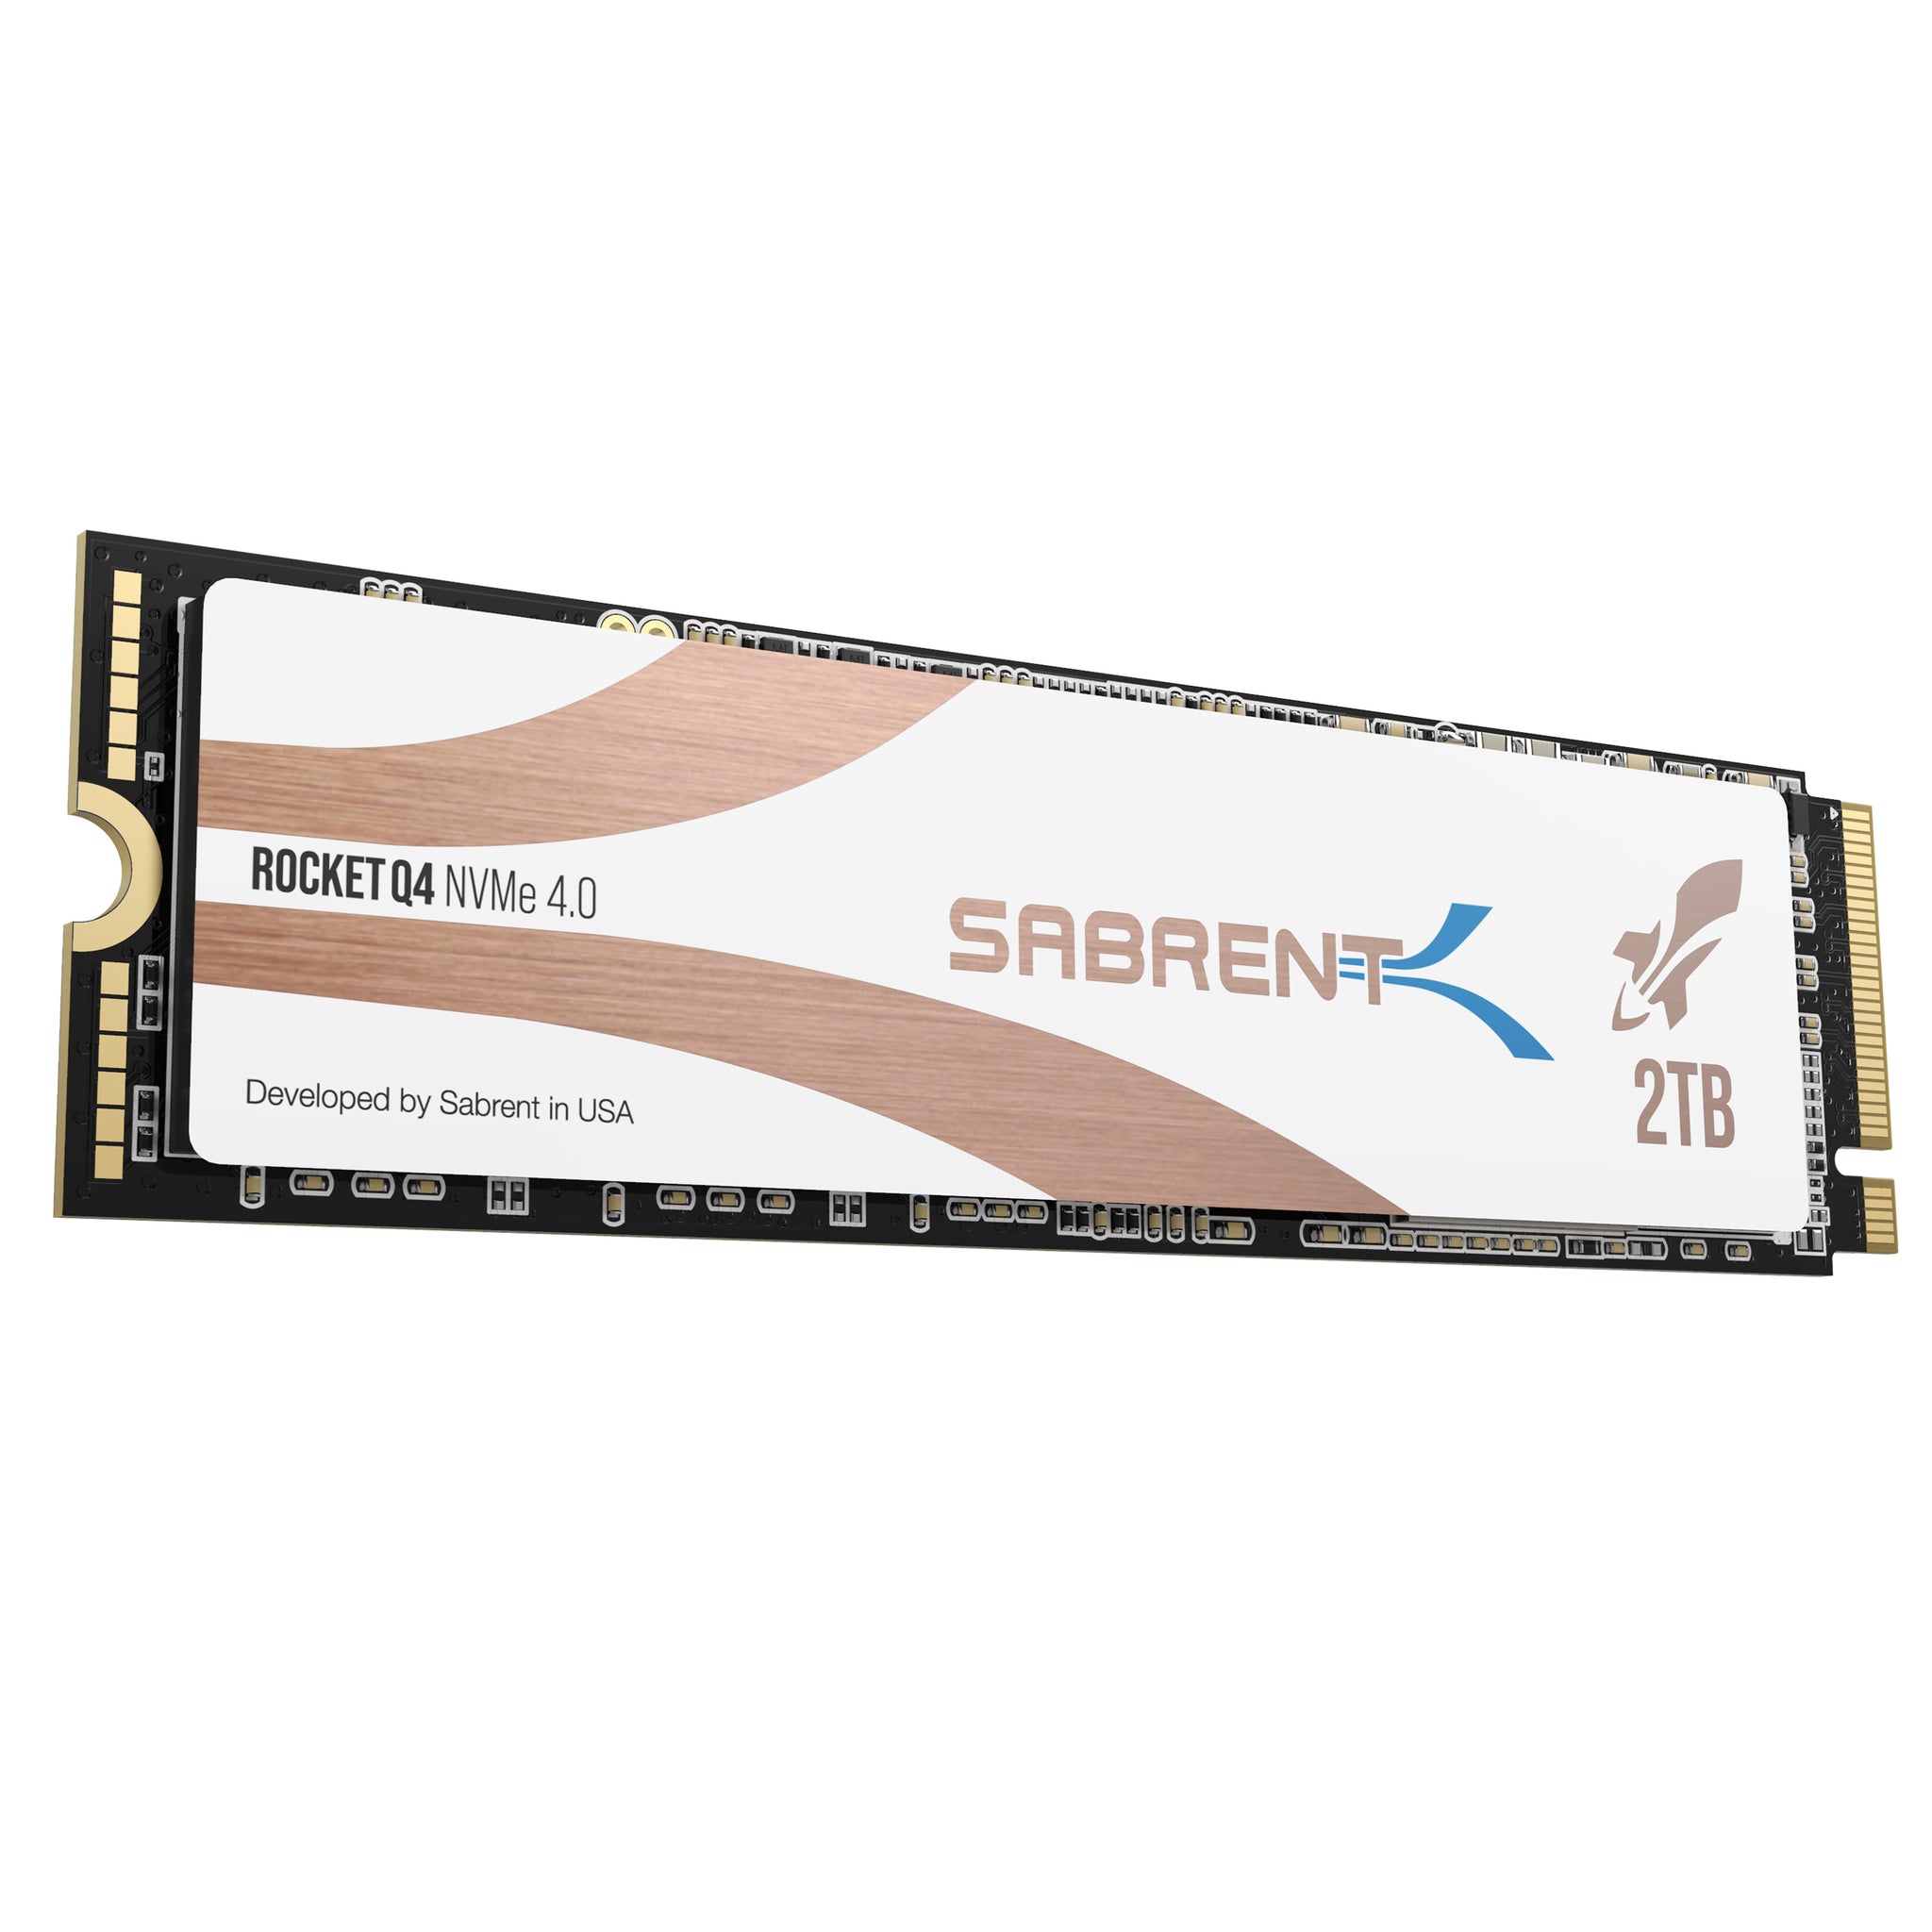 Rocket Q4 NVMe SSD - Sabrent